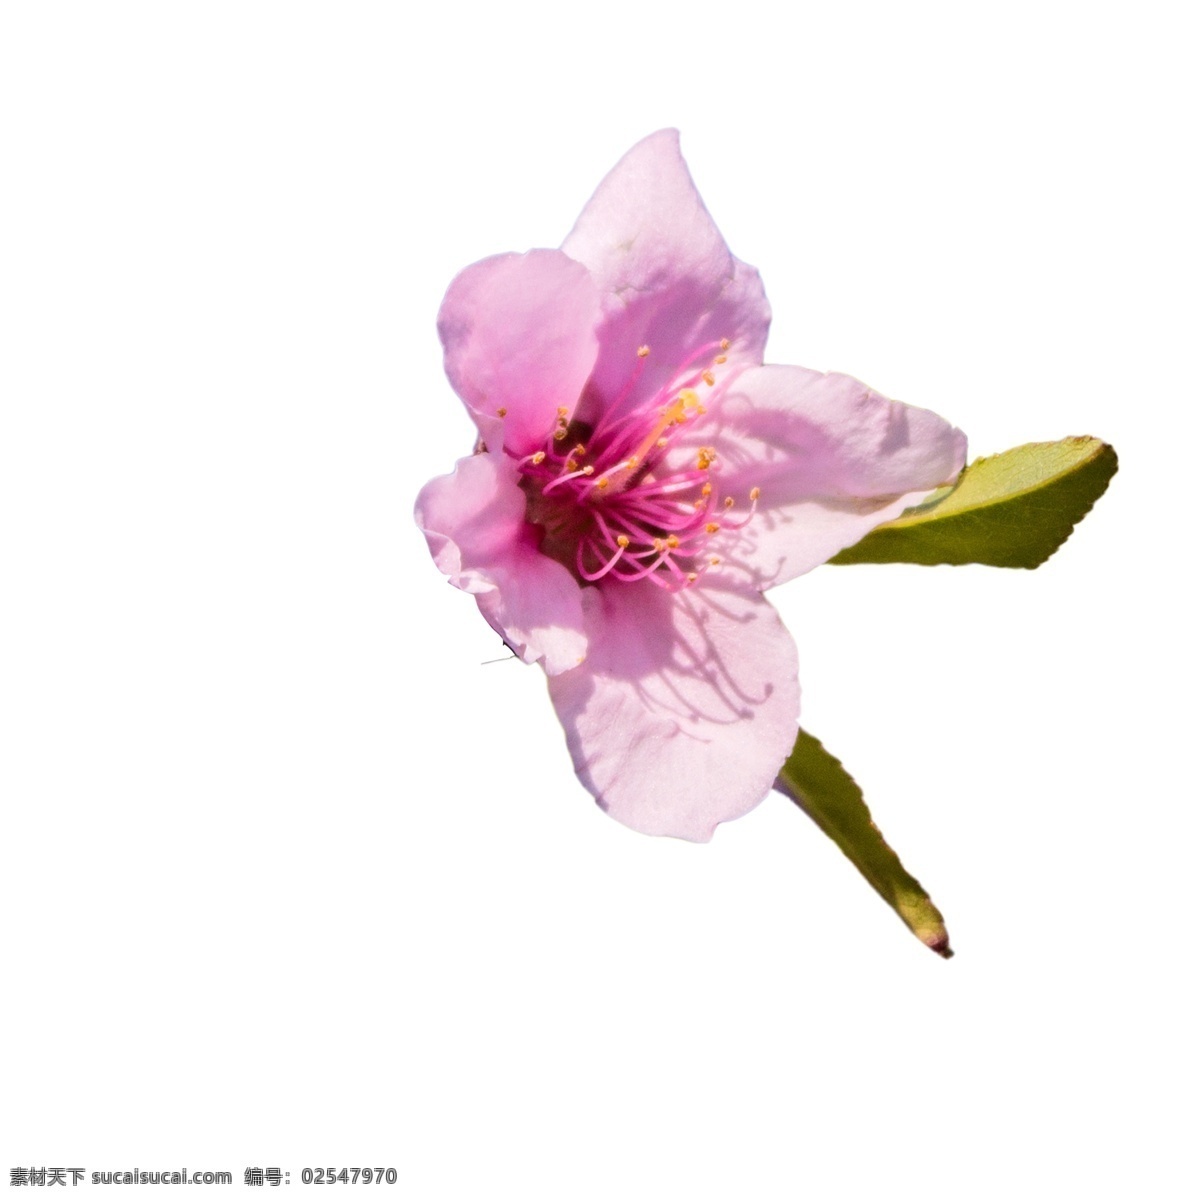 盛开 粉色 鲜花 粉色花朵 盛开的鲜花 鲜花绿叶 卡通插图 创意卡通下载 插图 png图下载